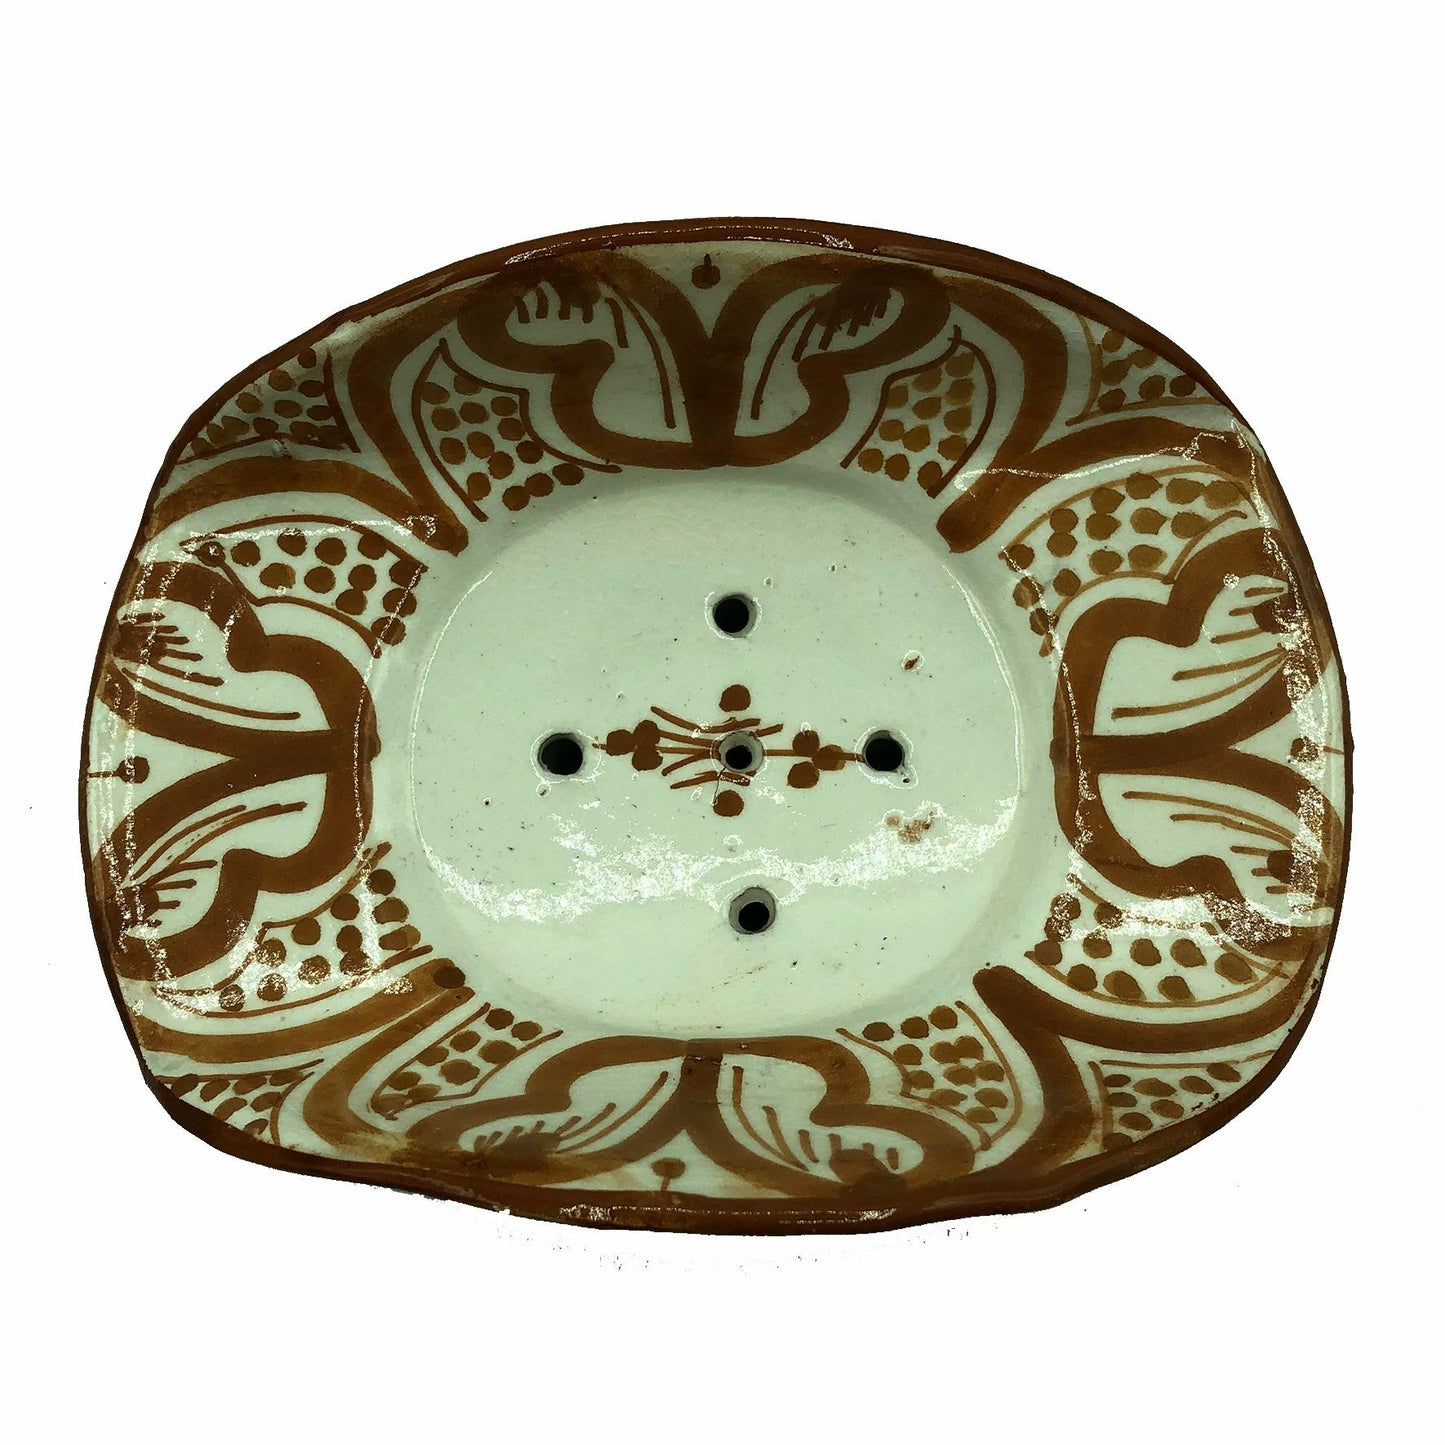 Arredamento Etnico Porta Sapone Ceramica Terracotta Artigiano Marocco 1904211003